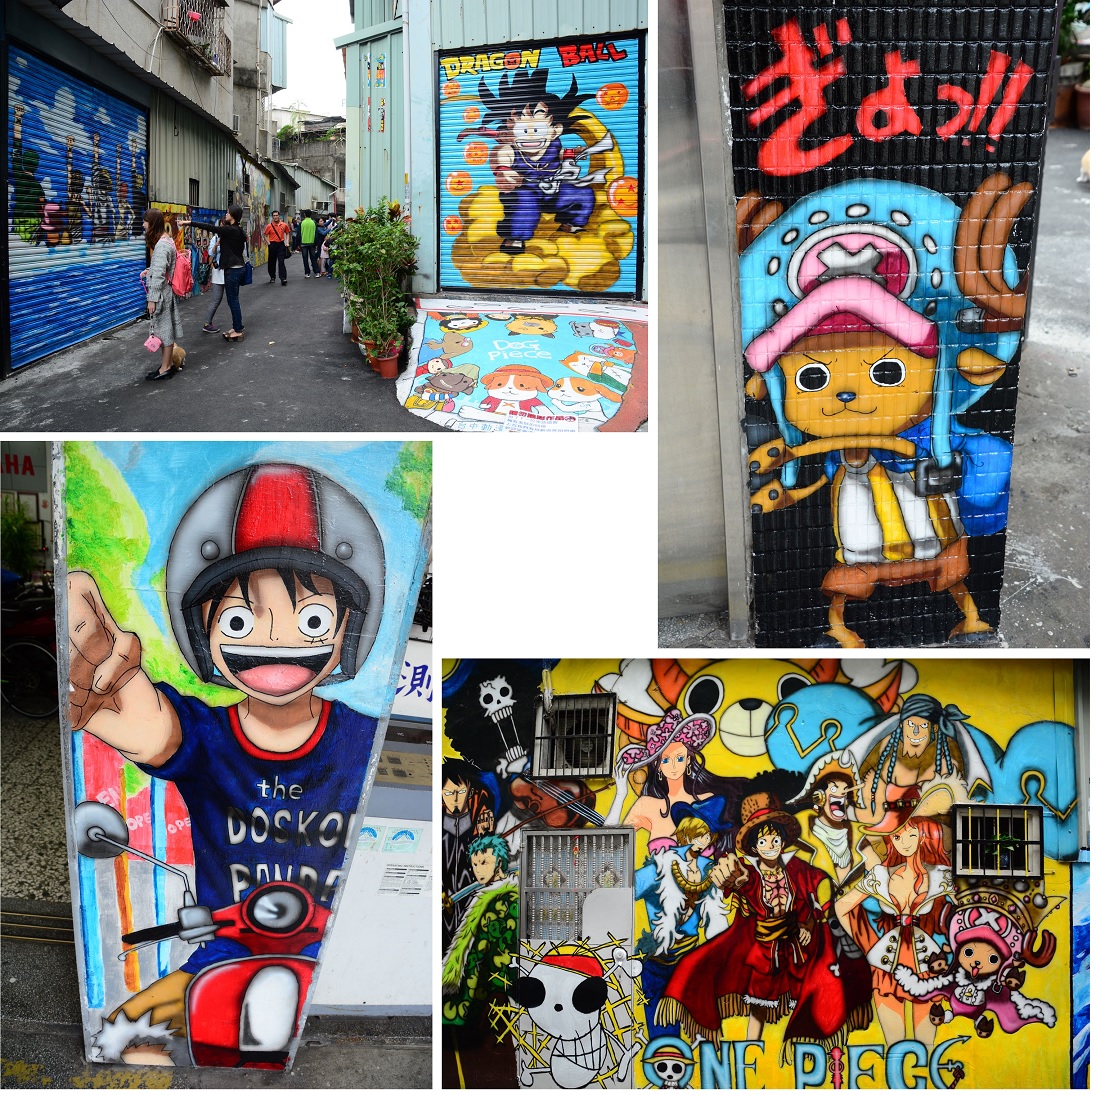 思い立ったら即台湾12 壁にアニメイラスト満載の不思議ストリートみーっけ 台中 台湾 の旅行記 ブログ By 熱帯魚さん フォートラベル